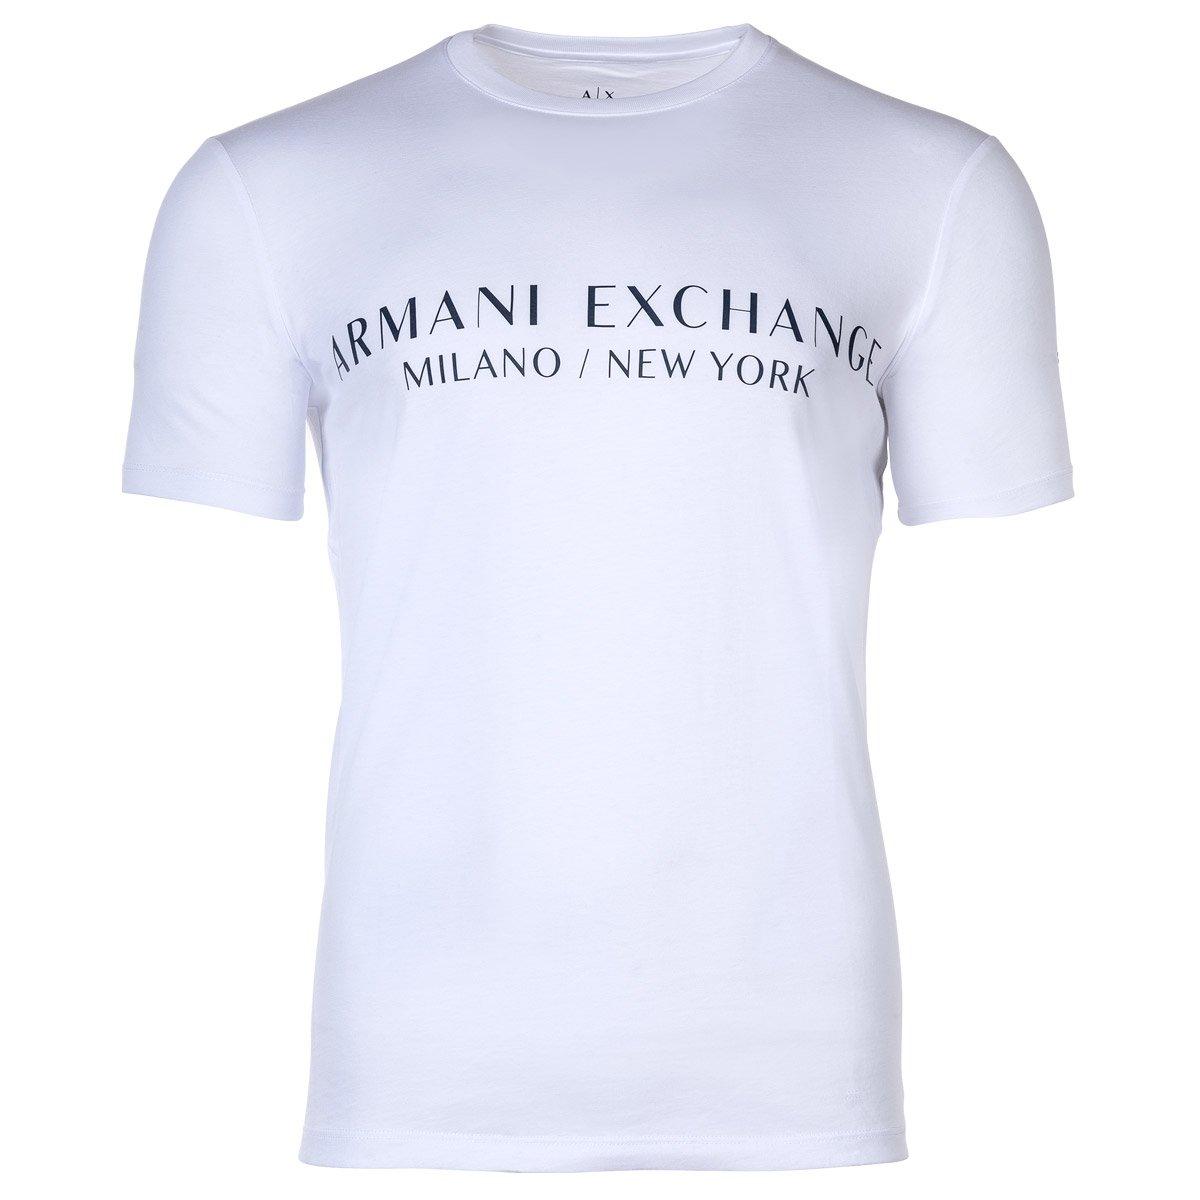 T-shirt Sportlich Bequem Sitzend Herren Weiss XL von Armani Exchange